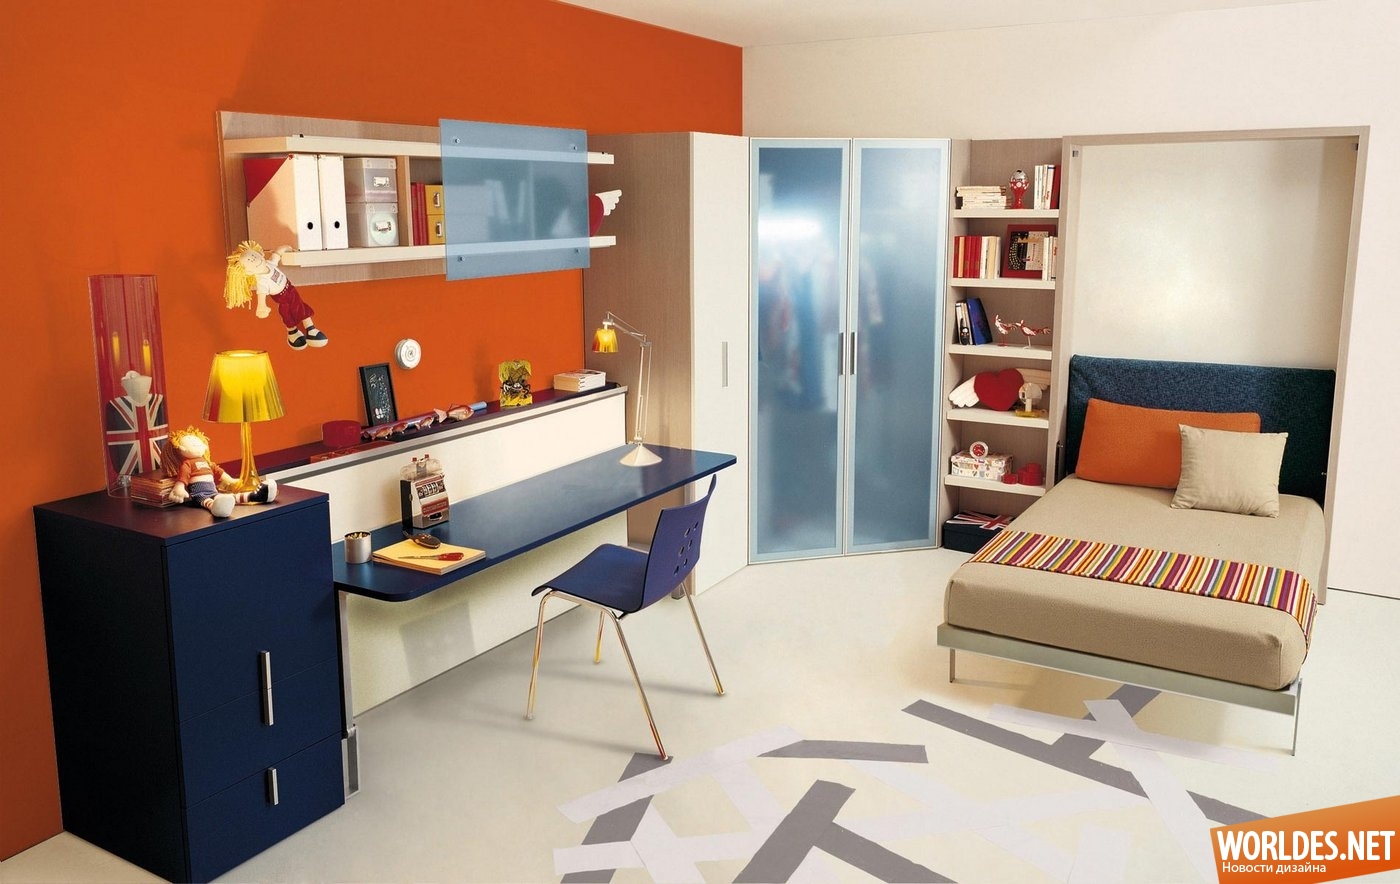 детская комната, детские комнаты, многофункциональная мебель, мебель для детской комнаты